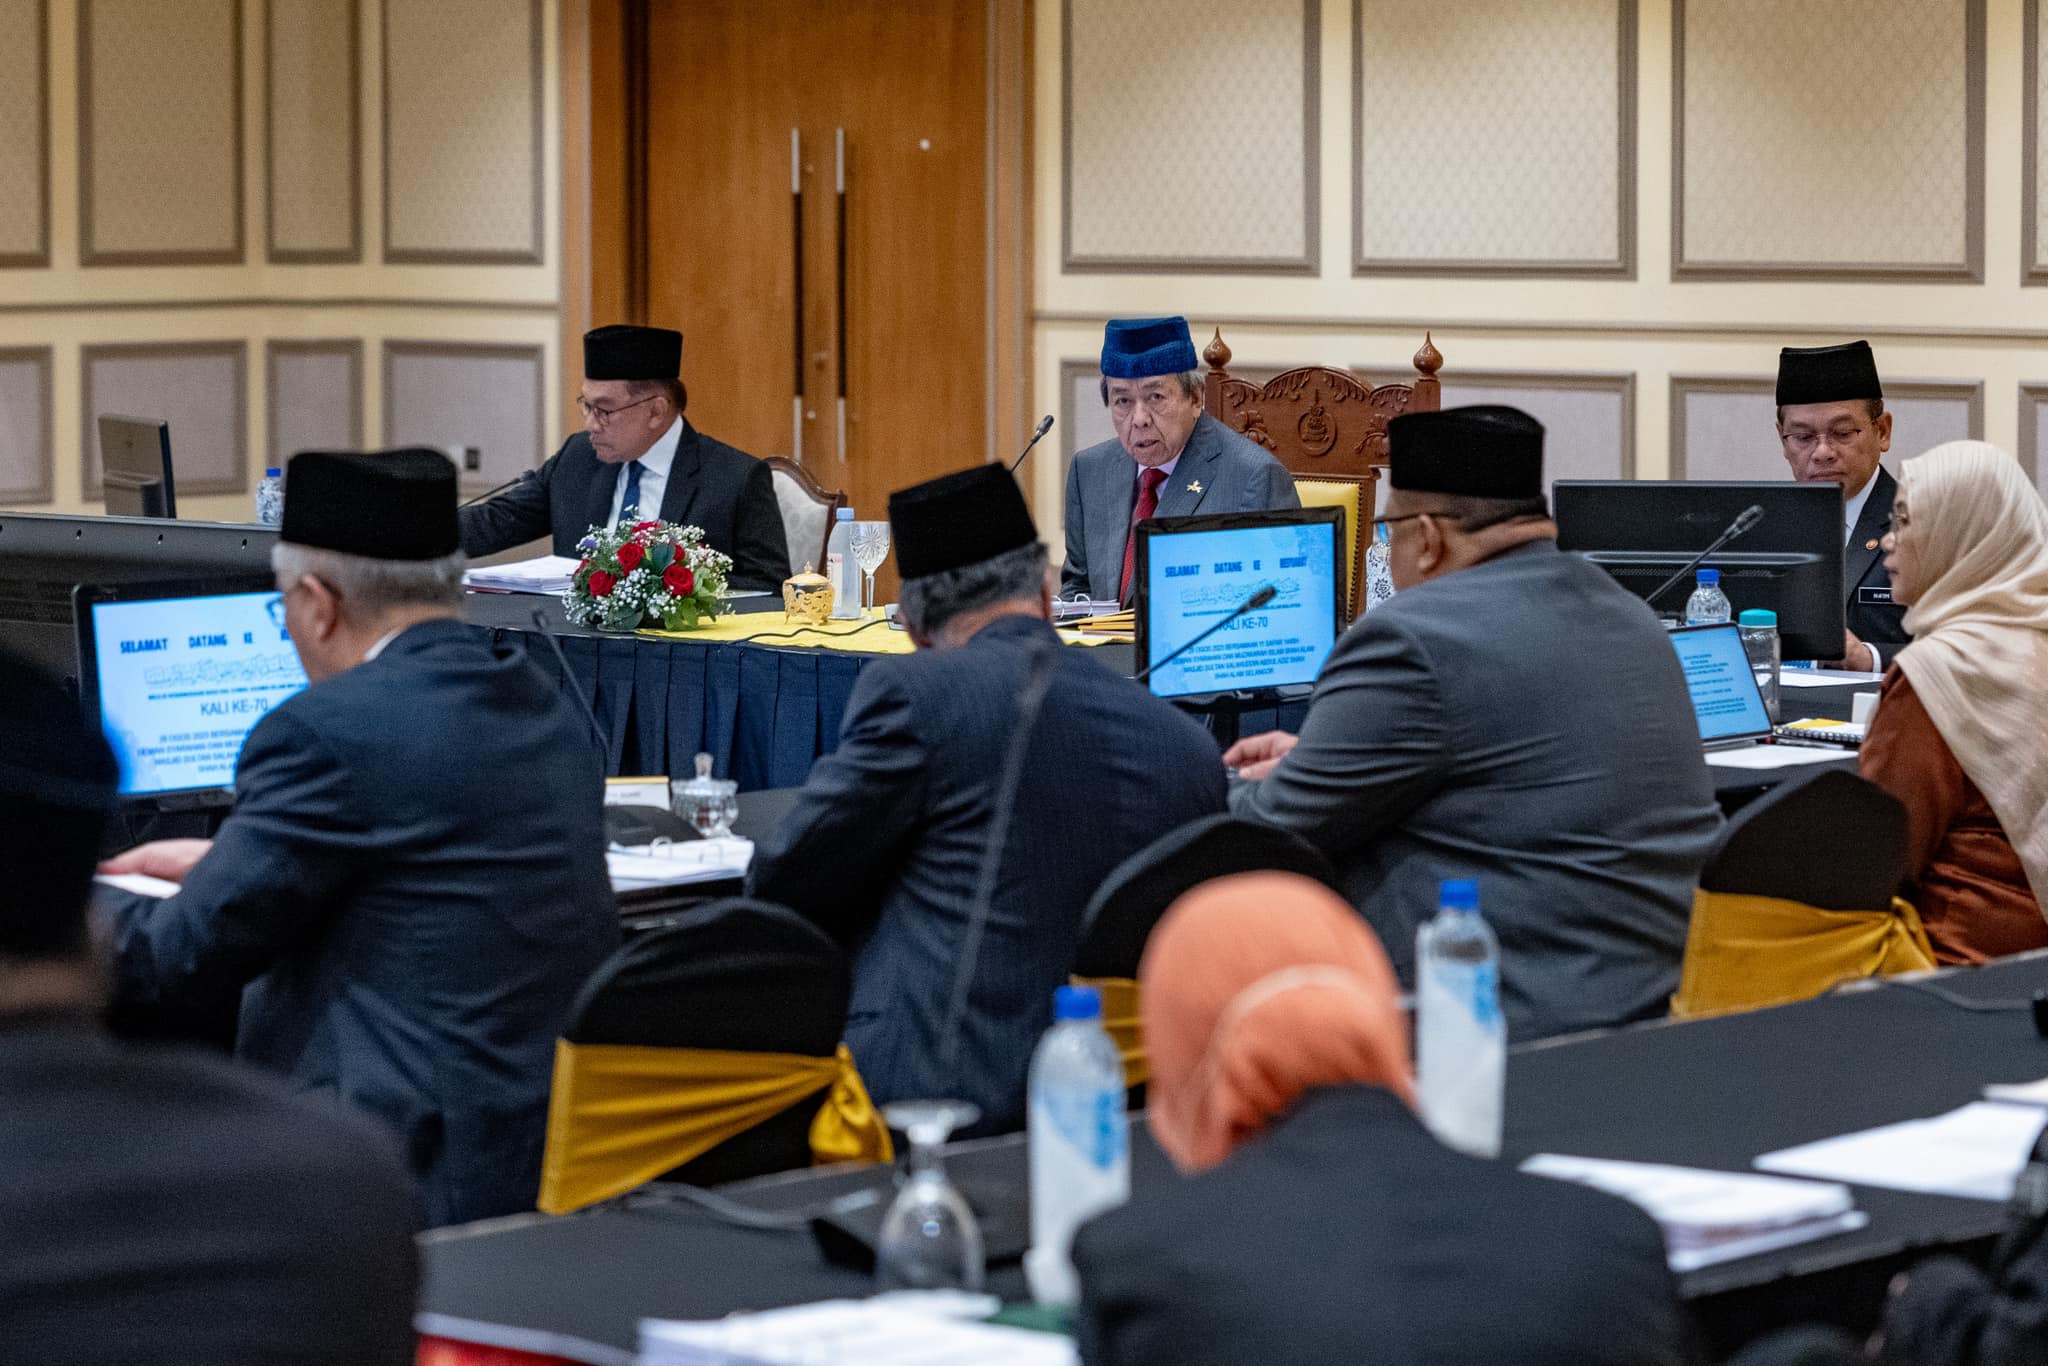 Segerakan jawatankuasa khas kaji kompetensi DUN gubal undang-undang Syariah: Sultan Selangor